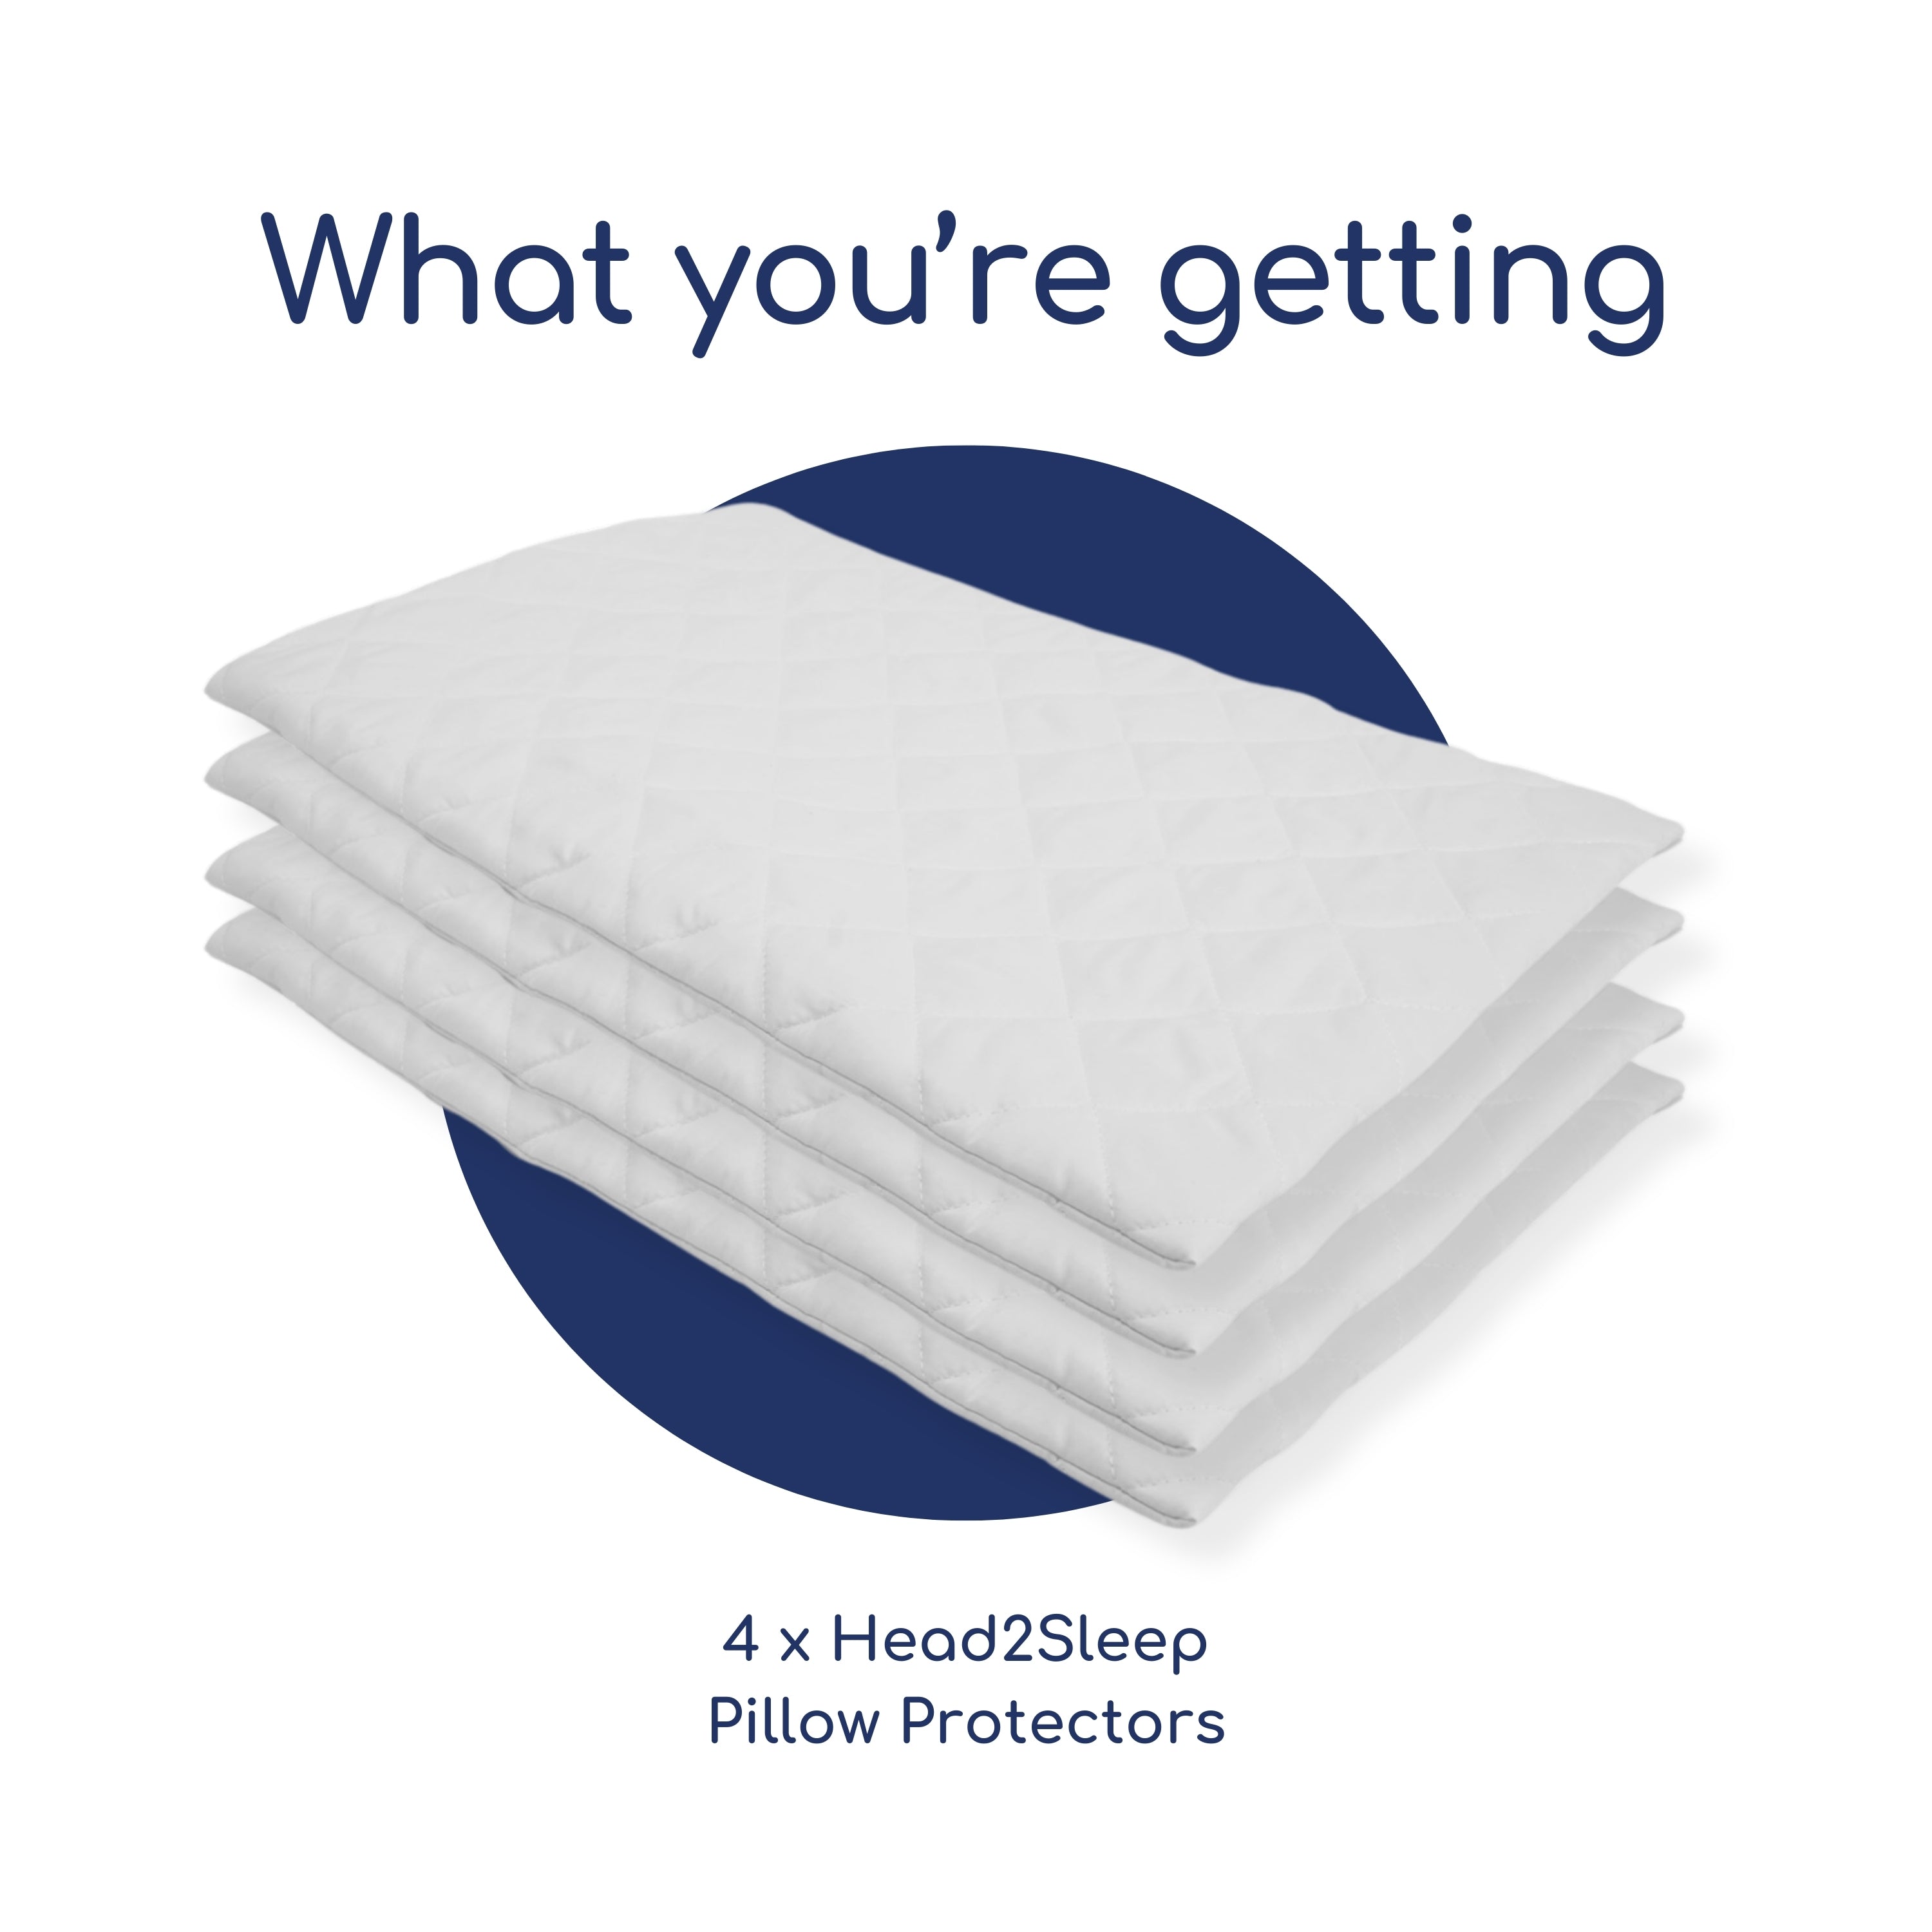 Dunlopillo Pillow Bundle - 2 Pairs with Pillow Protectors